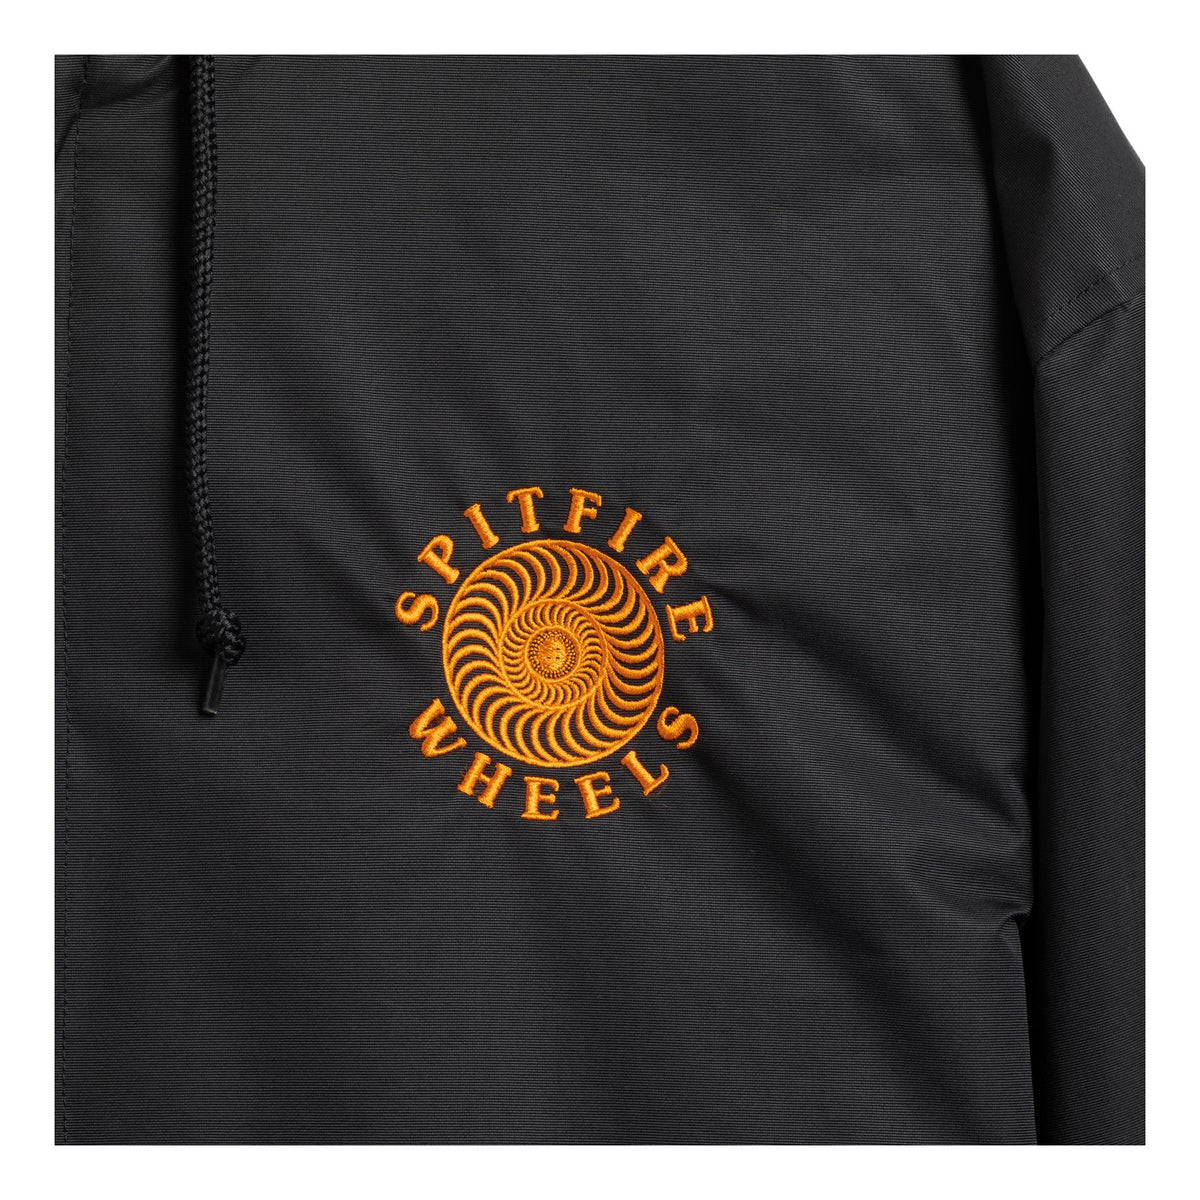 Spitfire OG Classic Embroidered Nylon Jacket Black/Orange - Venue Skateboards